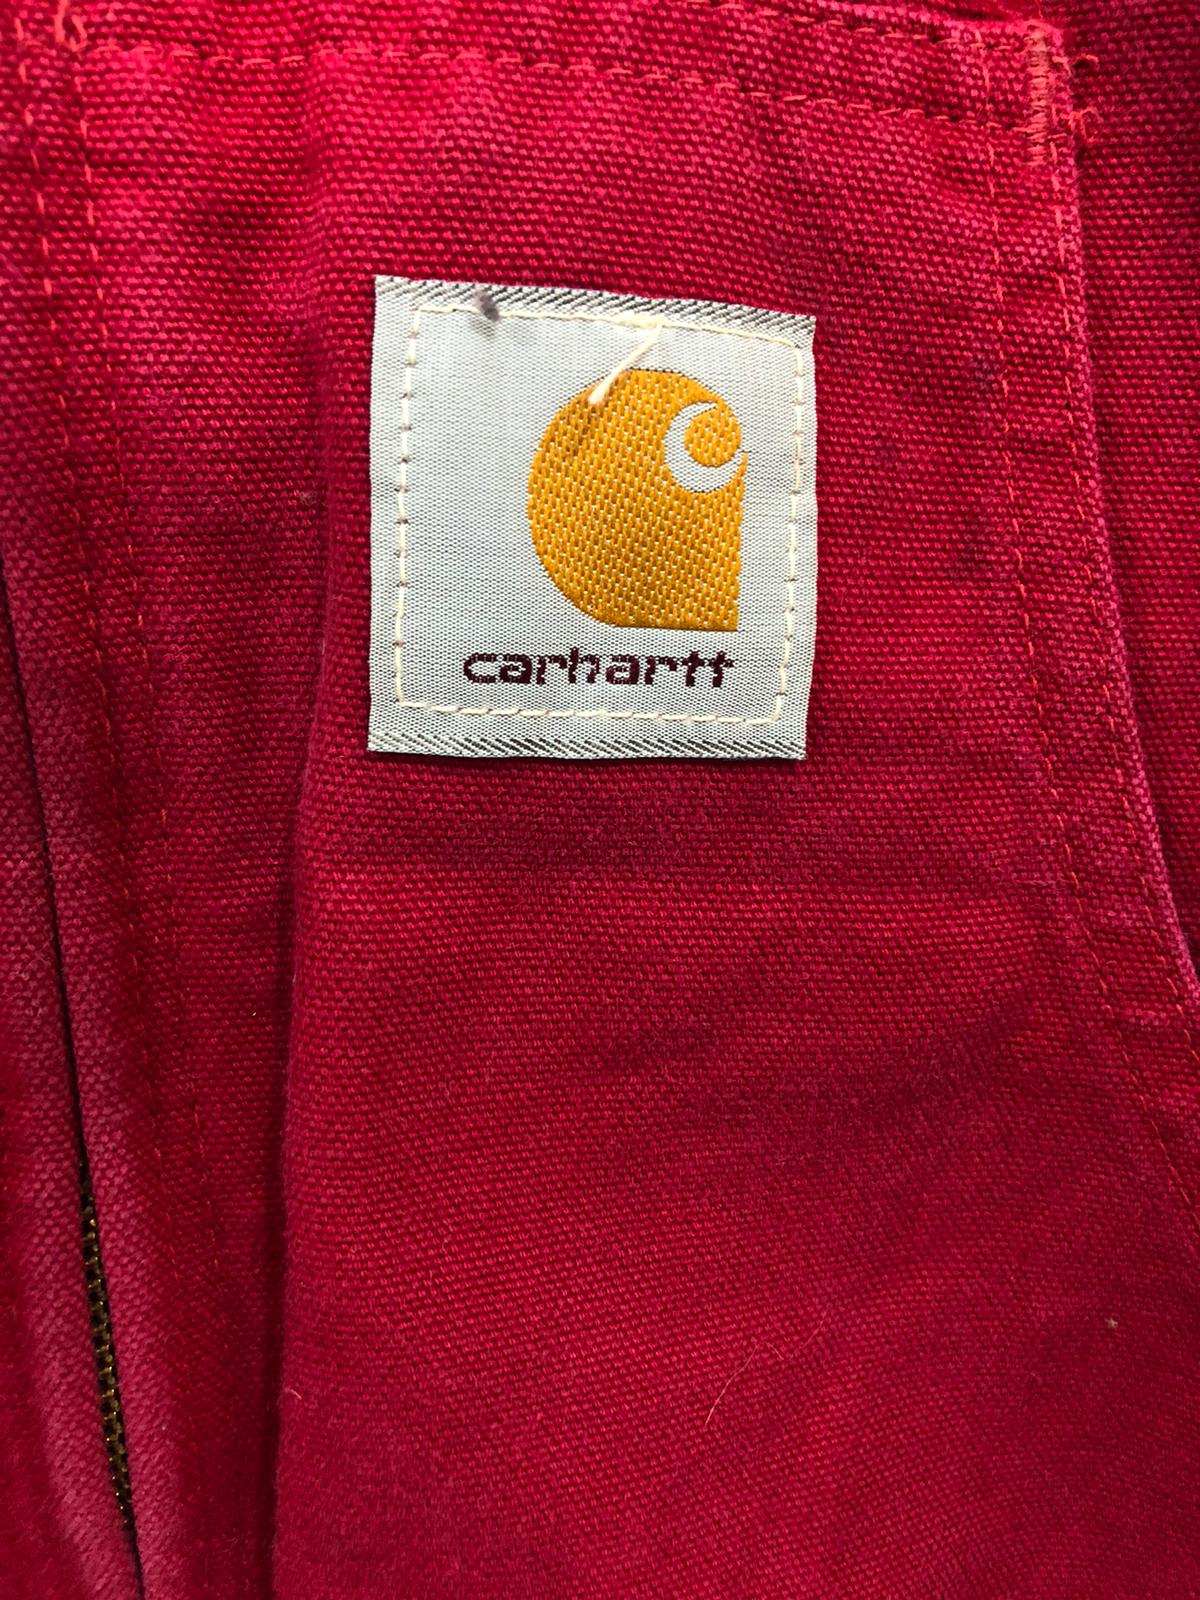 100x Carhartt Dickies Jackets Mixed